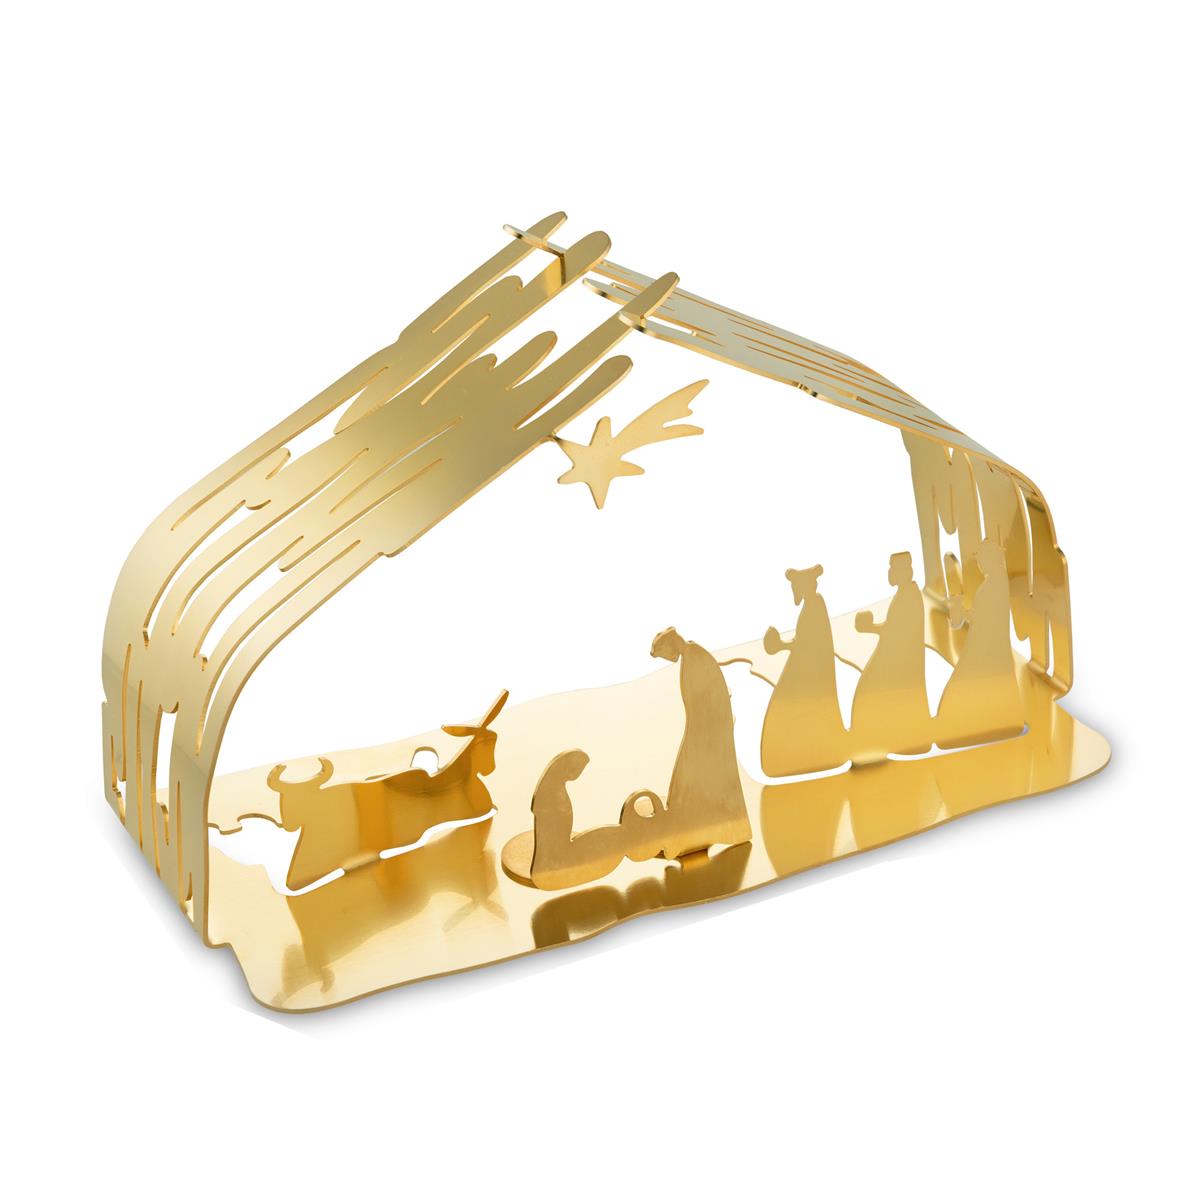 Alessi-Bark Crib Nativity scene in 18/10 stainless steel, gilded